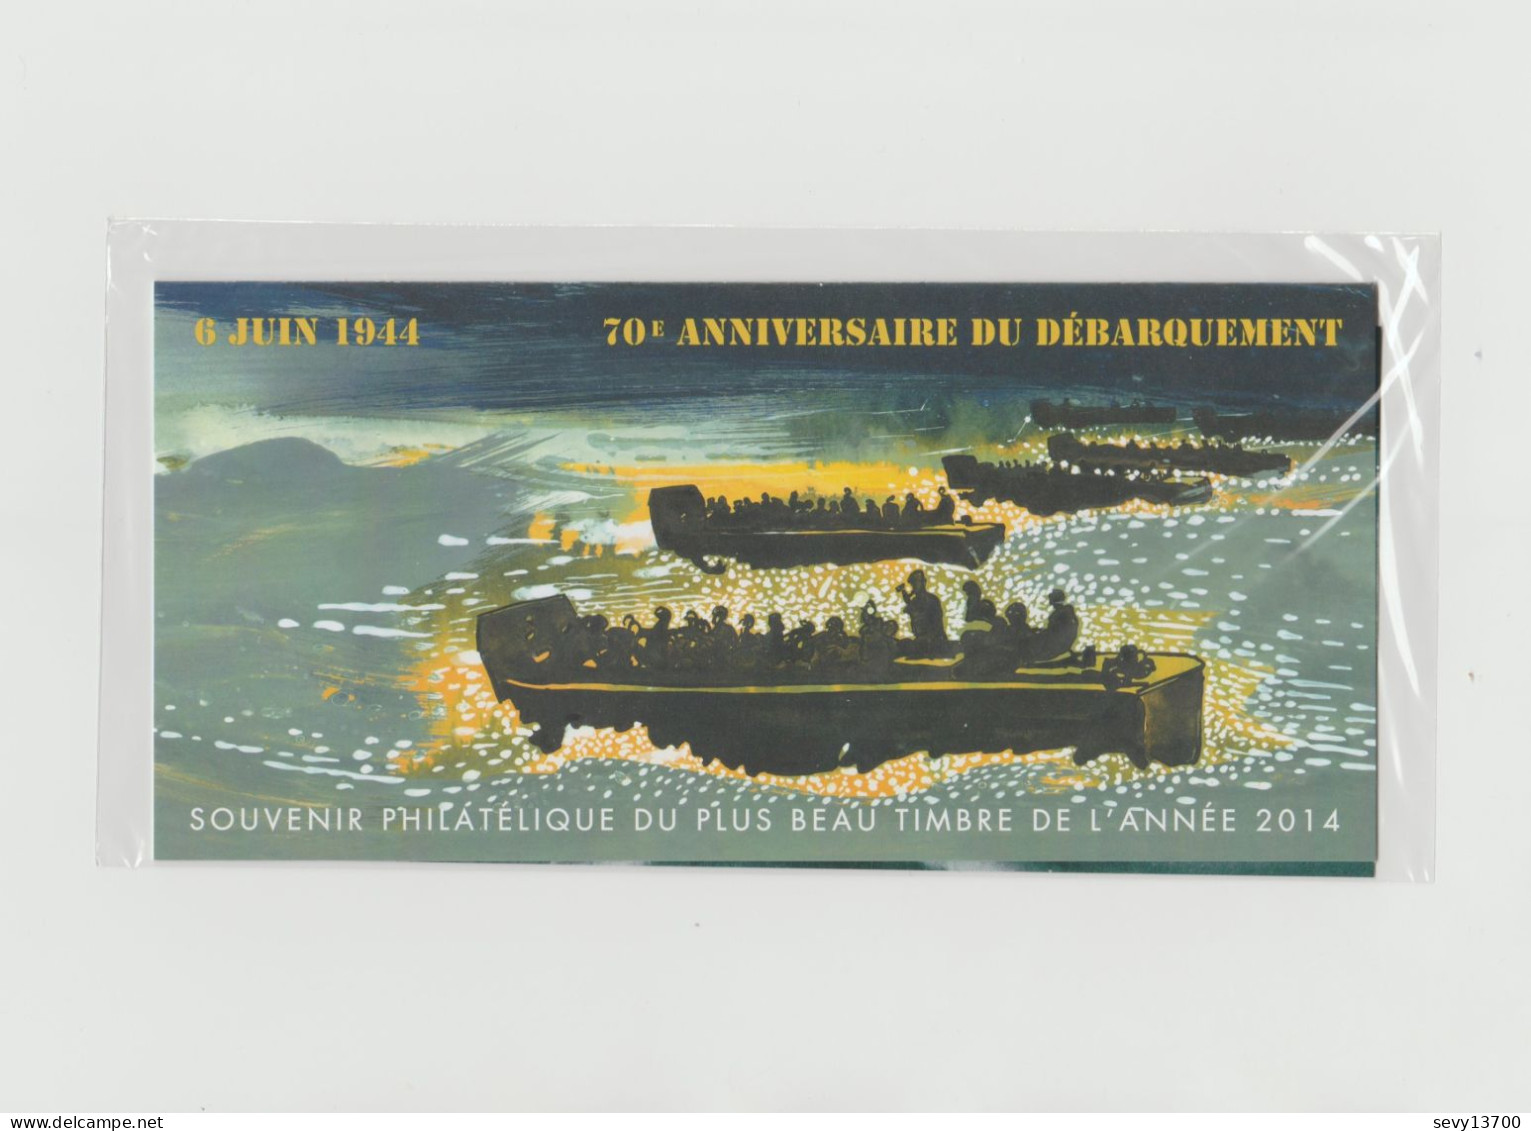 France 2015 - Bloc Souvenir Philatélique - 6 Juin 1944 70ème Anniversaire Du Débarquement N° 114 - Neuf Sous Blister - Bloques Souvenir